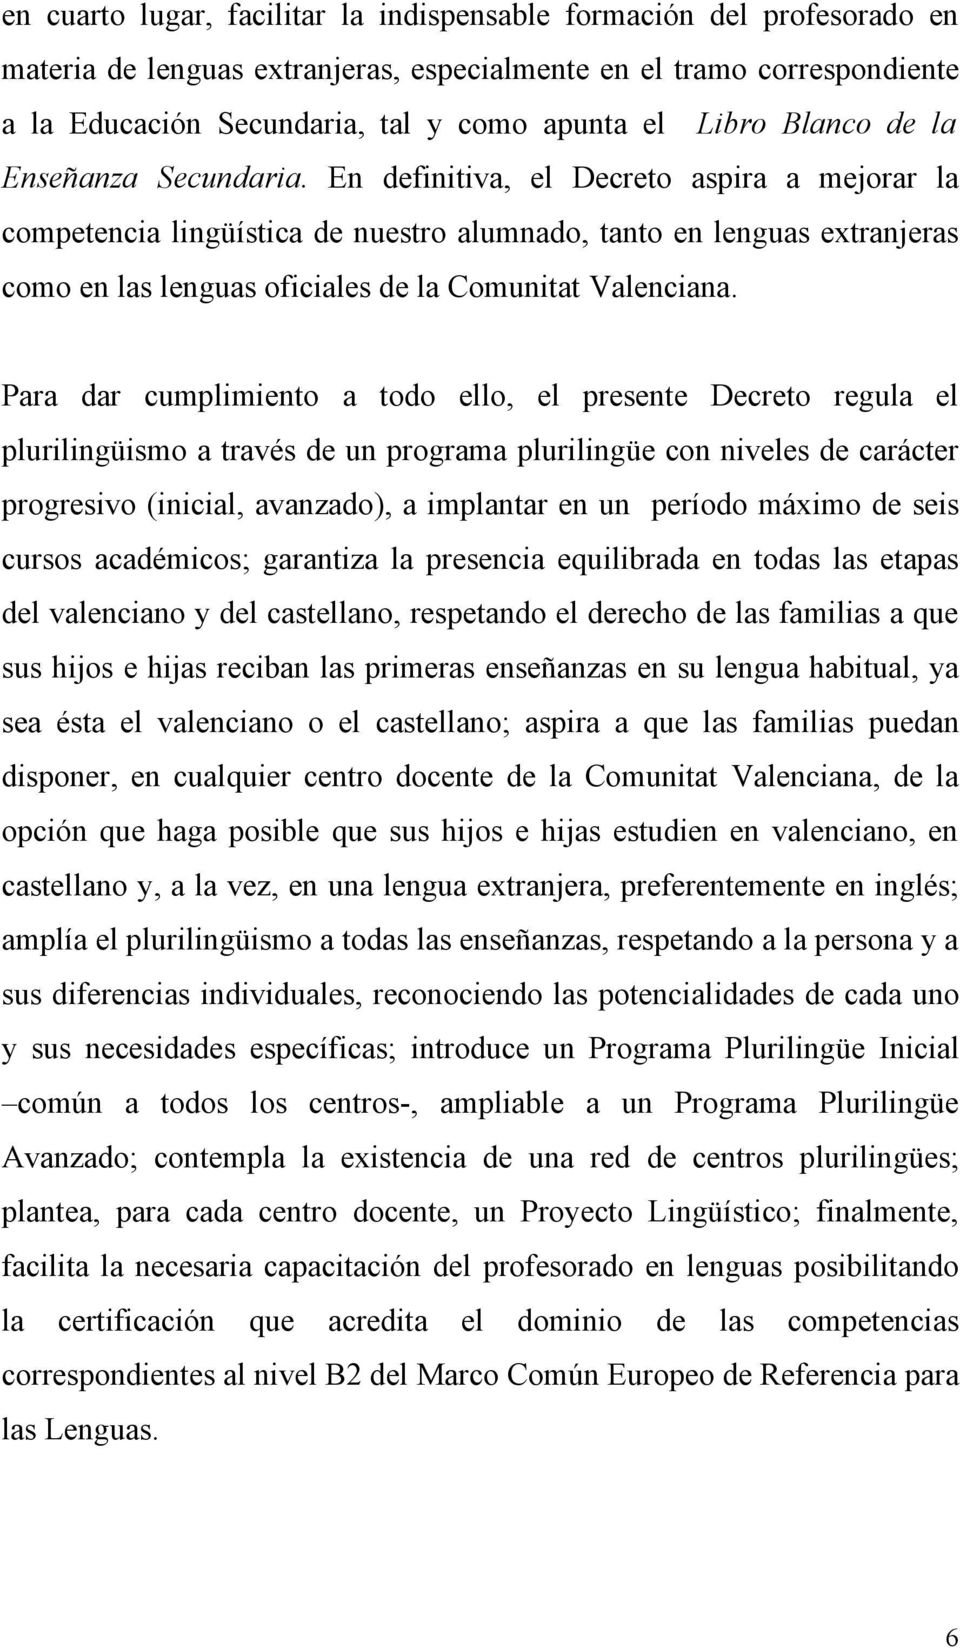 En definitiva, el Decreto aspira a mejorar la competencia lingüística de nuestro alumnado, tanto en lenguas extranjeras como en las lenguas oficiales de la Comunitat Valenciana.